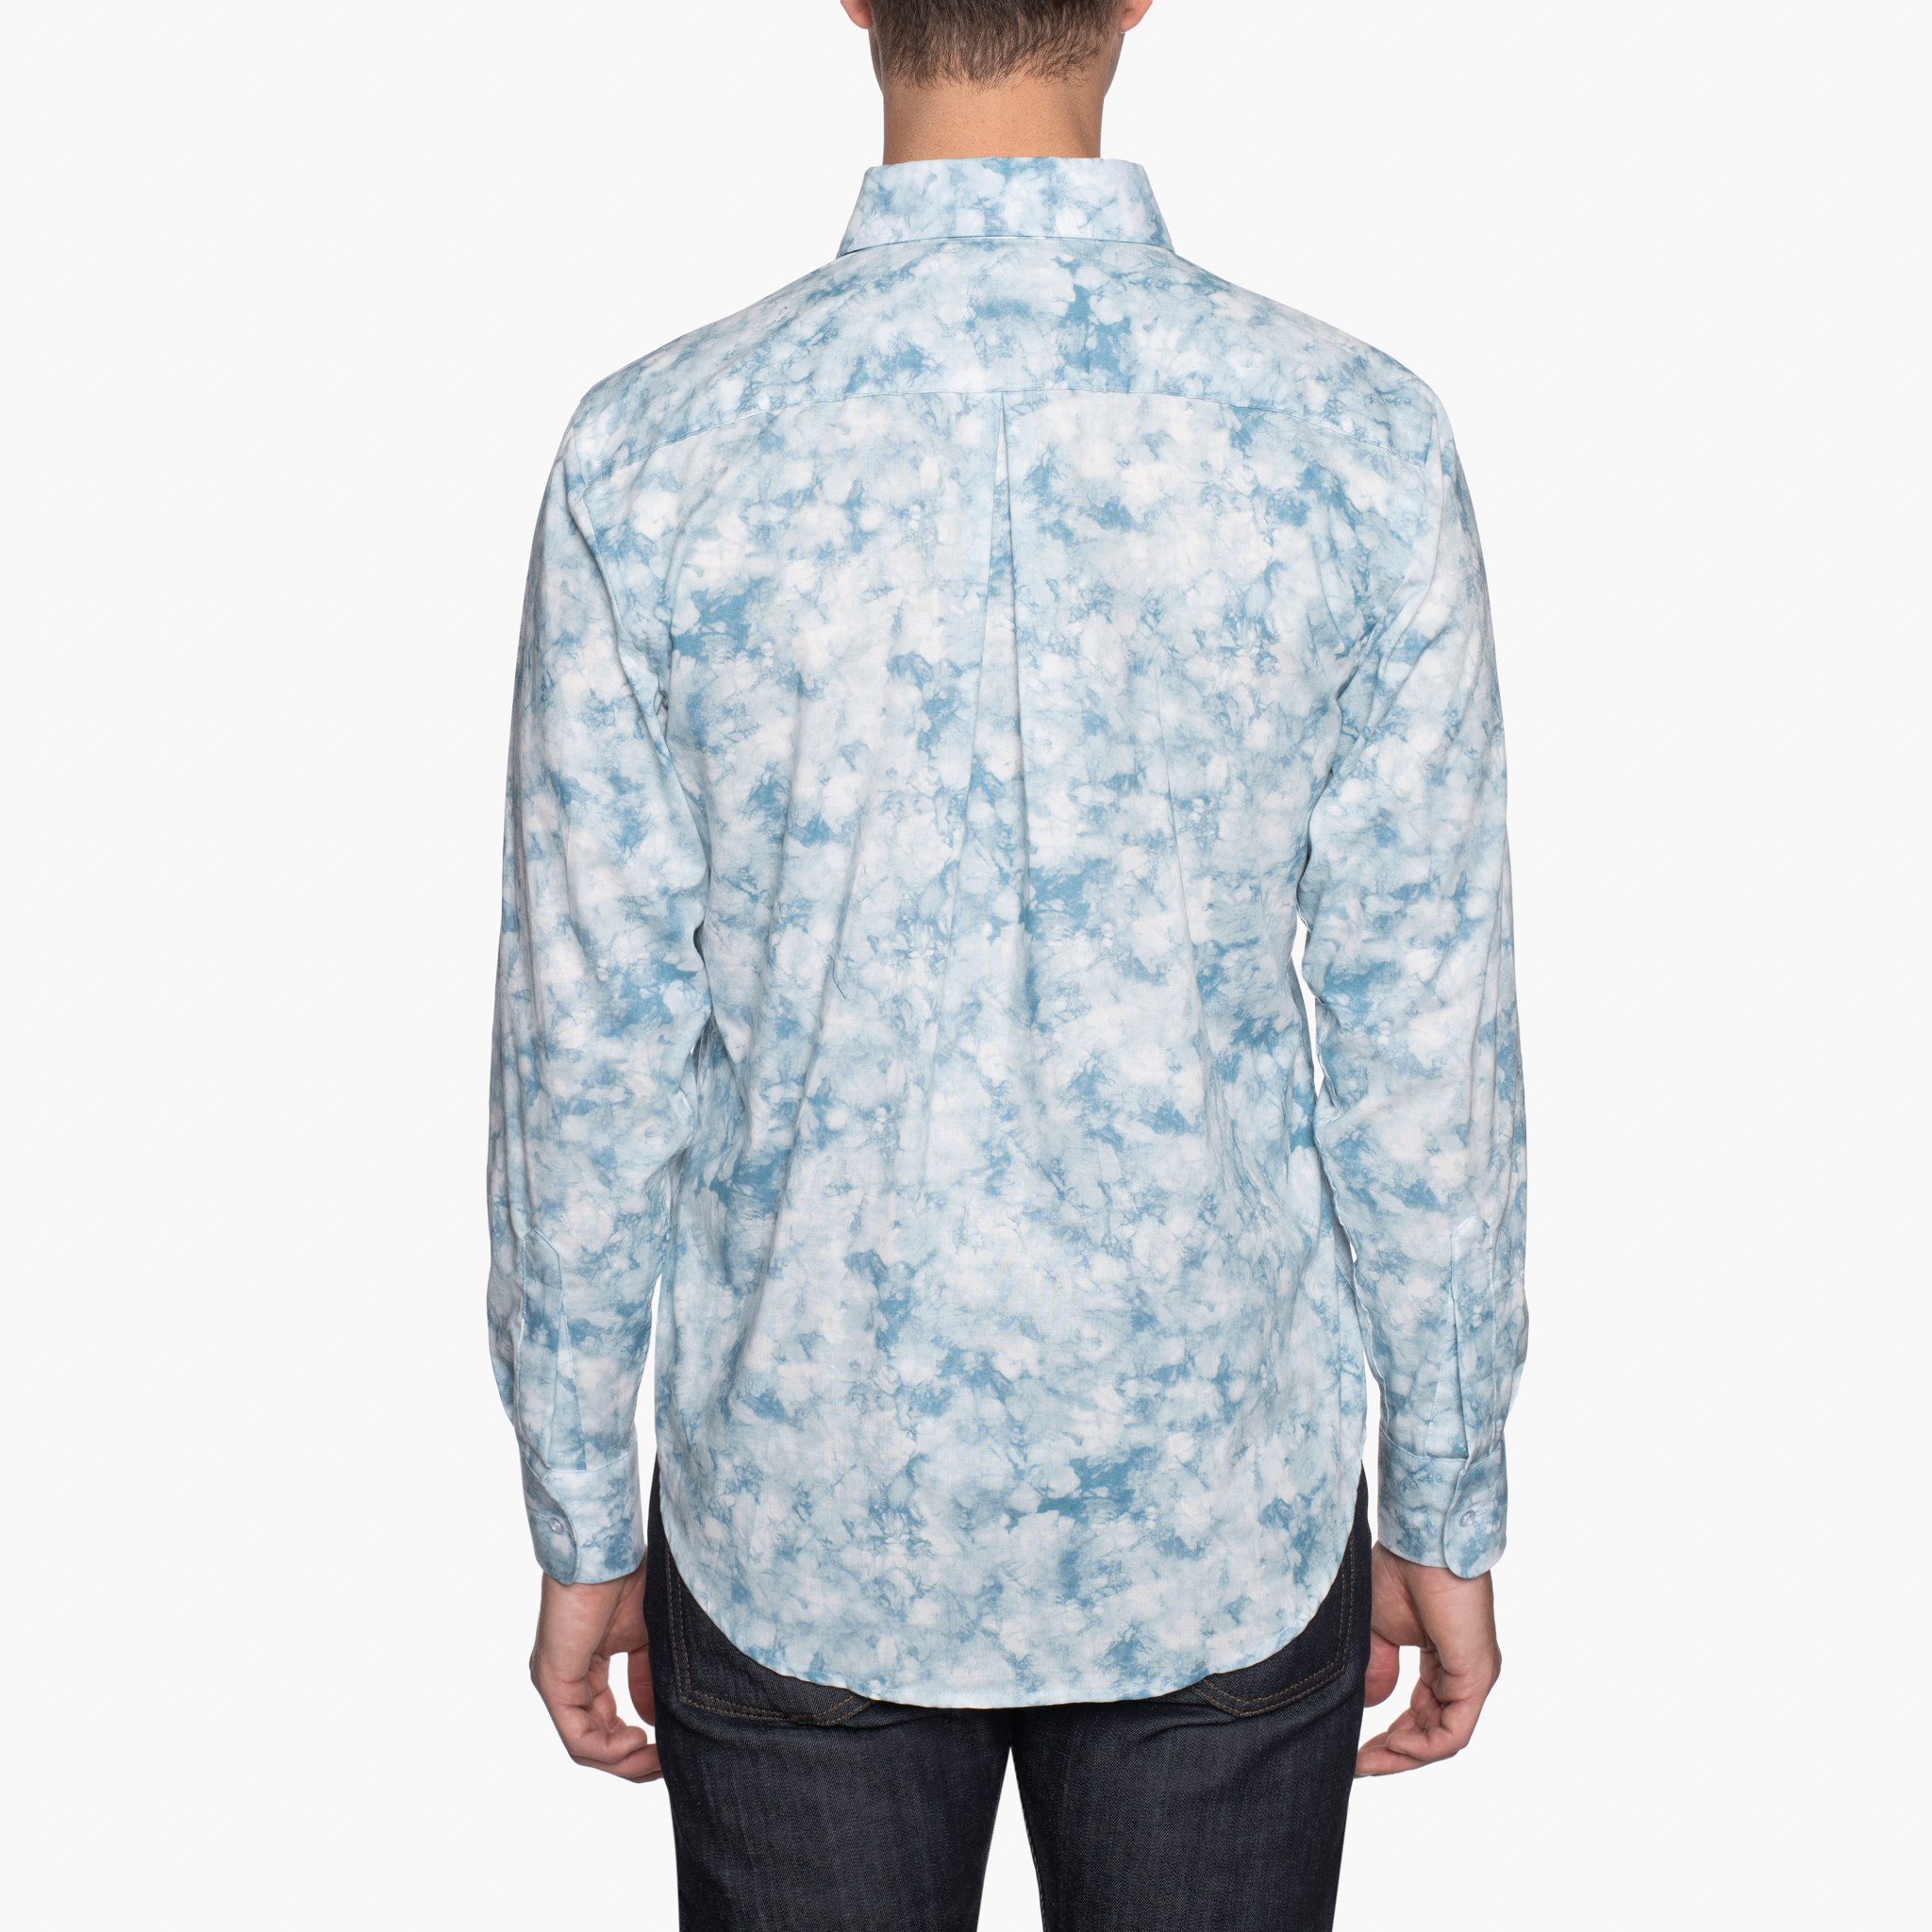  Easy Shirt - Tie Dye Print - Pale Blue - back 